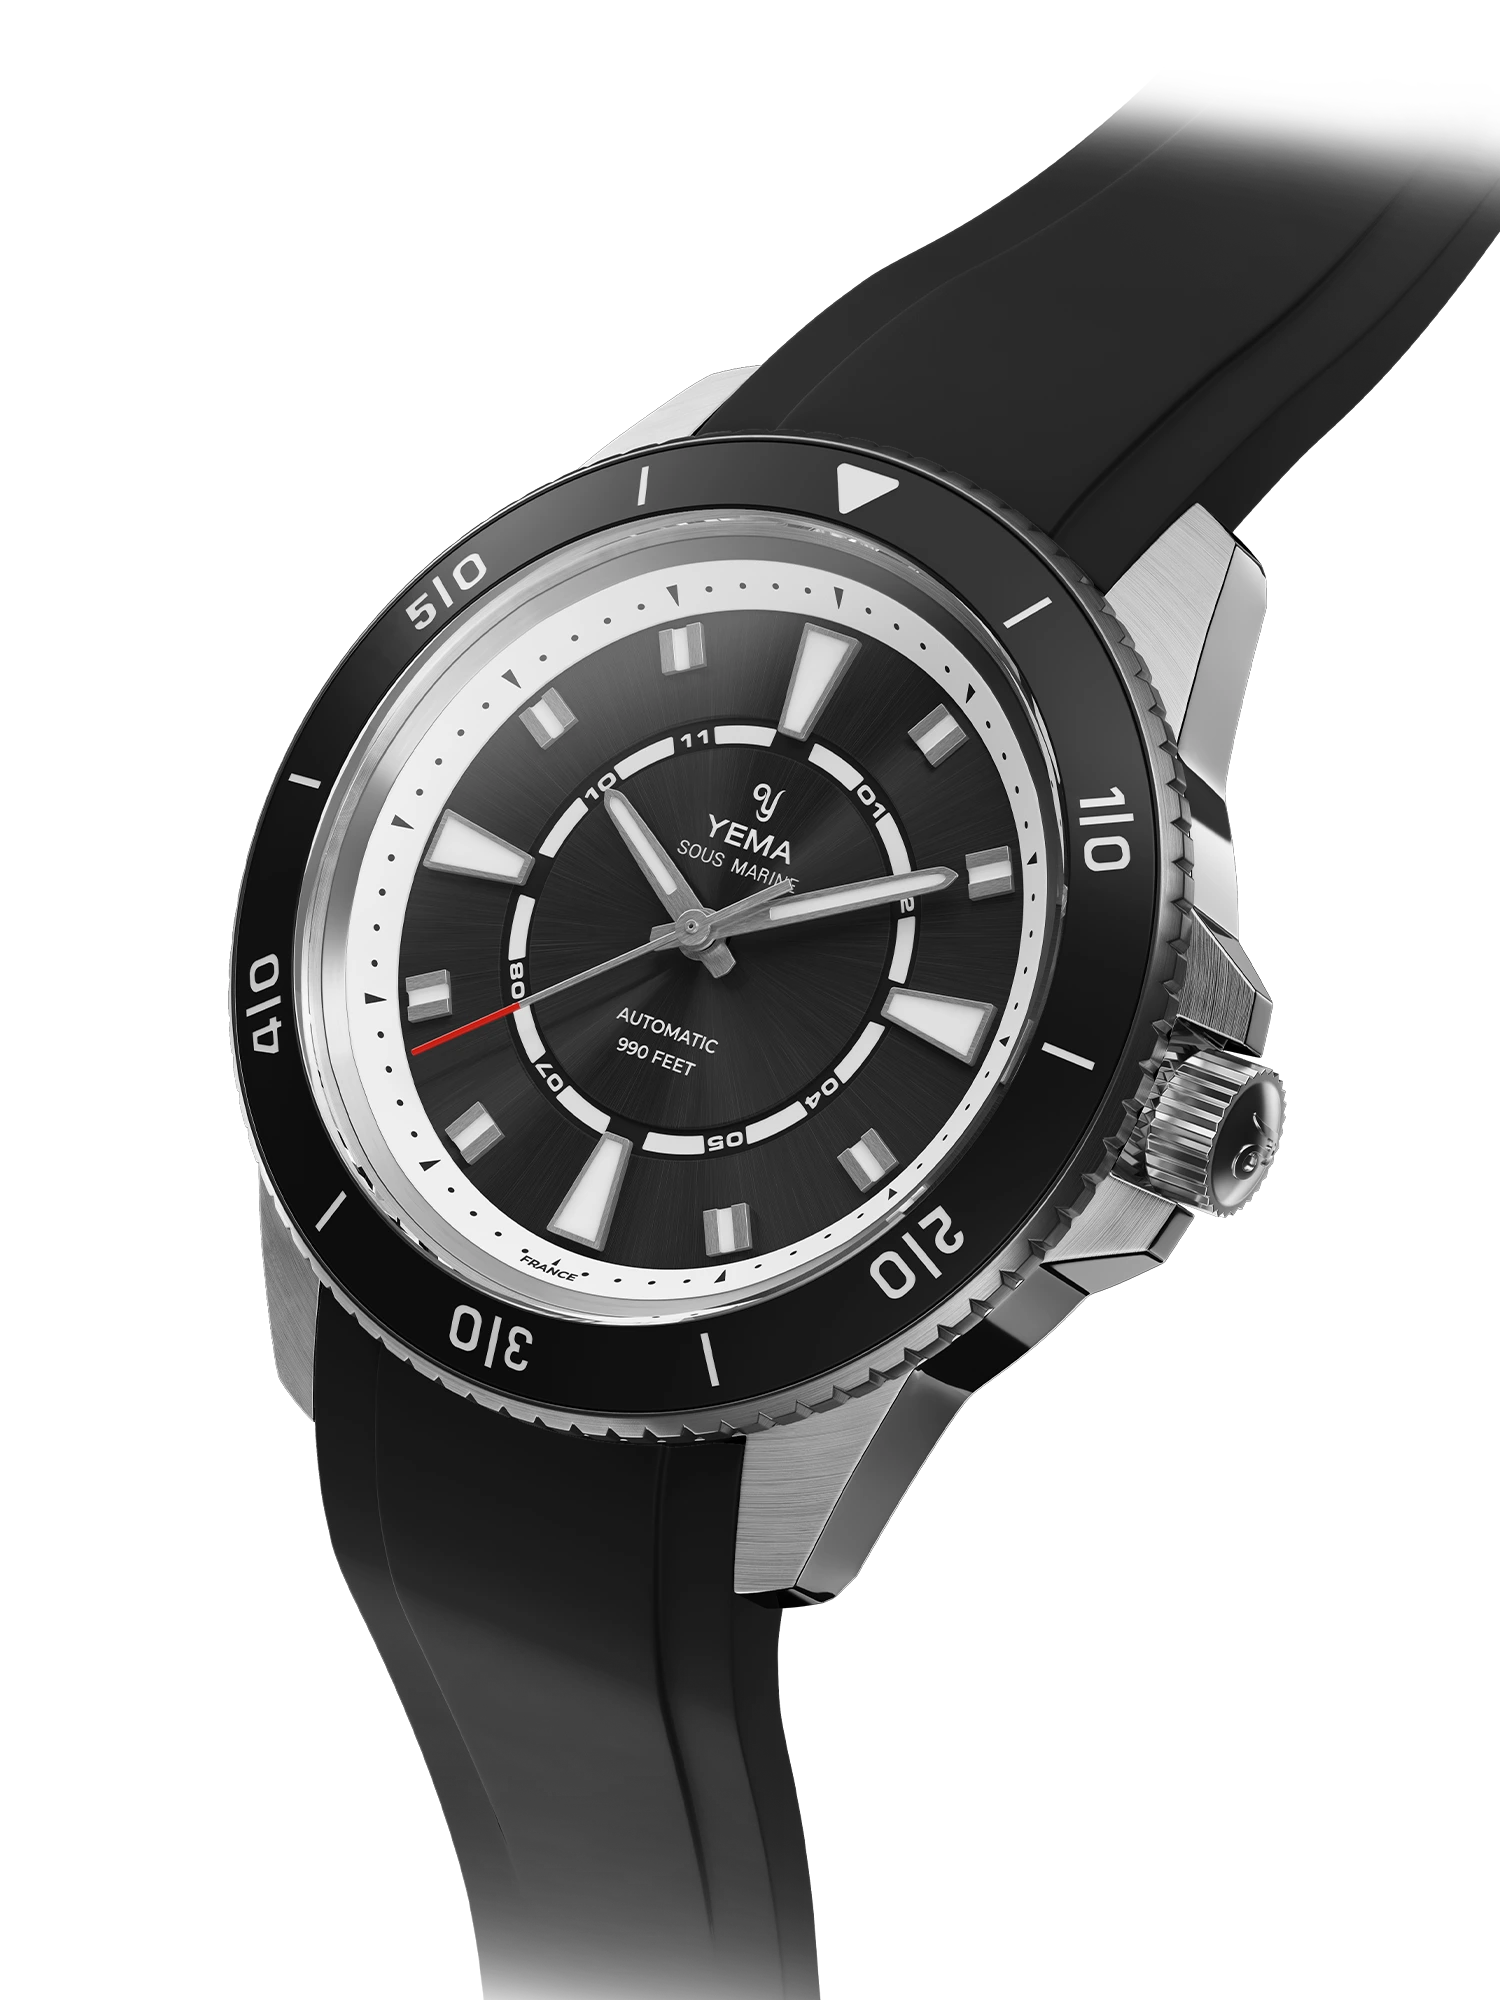 イエマ® フランス公式サイト I 1948年創業のメイドインフランス腕時計